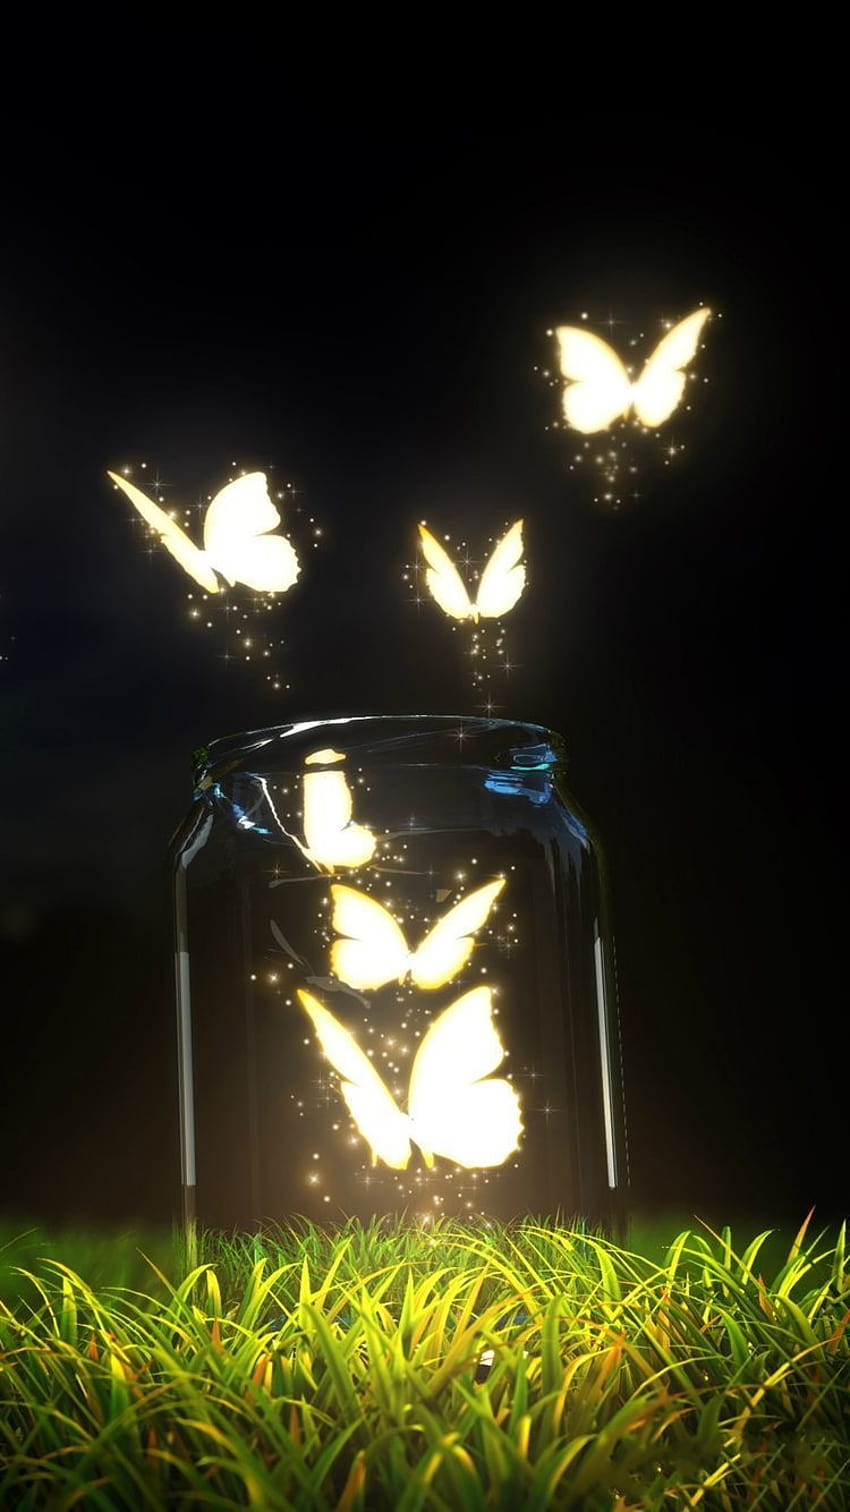 ↑↑¡TOCA Y OBTÉN LA APLICACIÓN! Mariposas brillantes Cristal de mariposa Luz nocturna Hierba brillante Magia mística..., de oscuro a brillante fondo de pantalla del teléfono